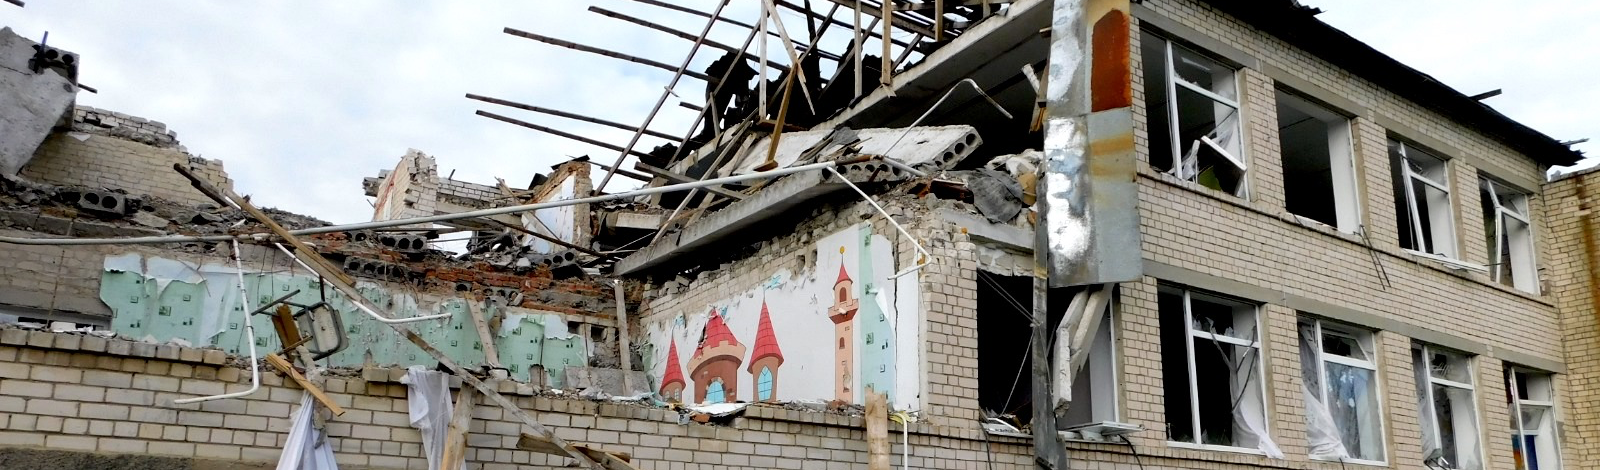 EXCLUSIVO: Um dia em meio à guerra na Ucrânia: bombas, destruição e silêncio